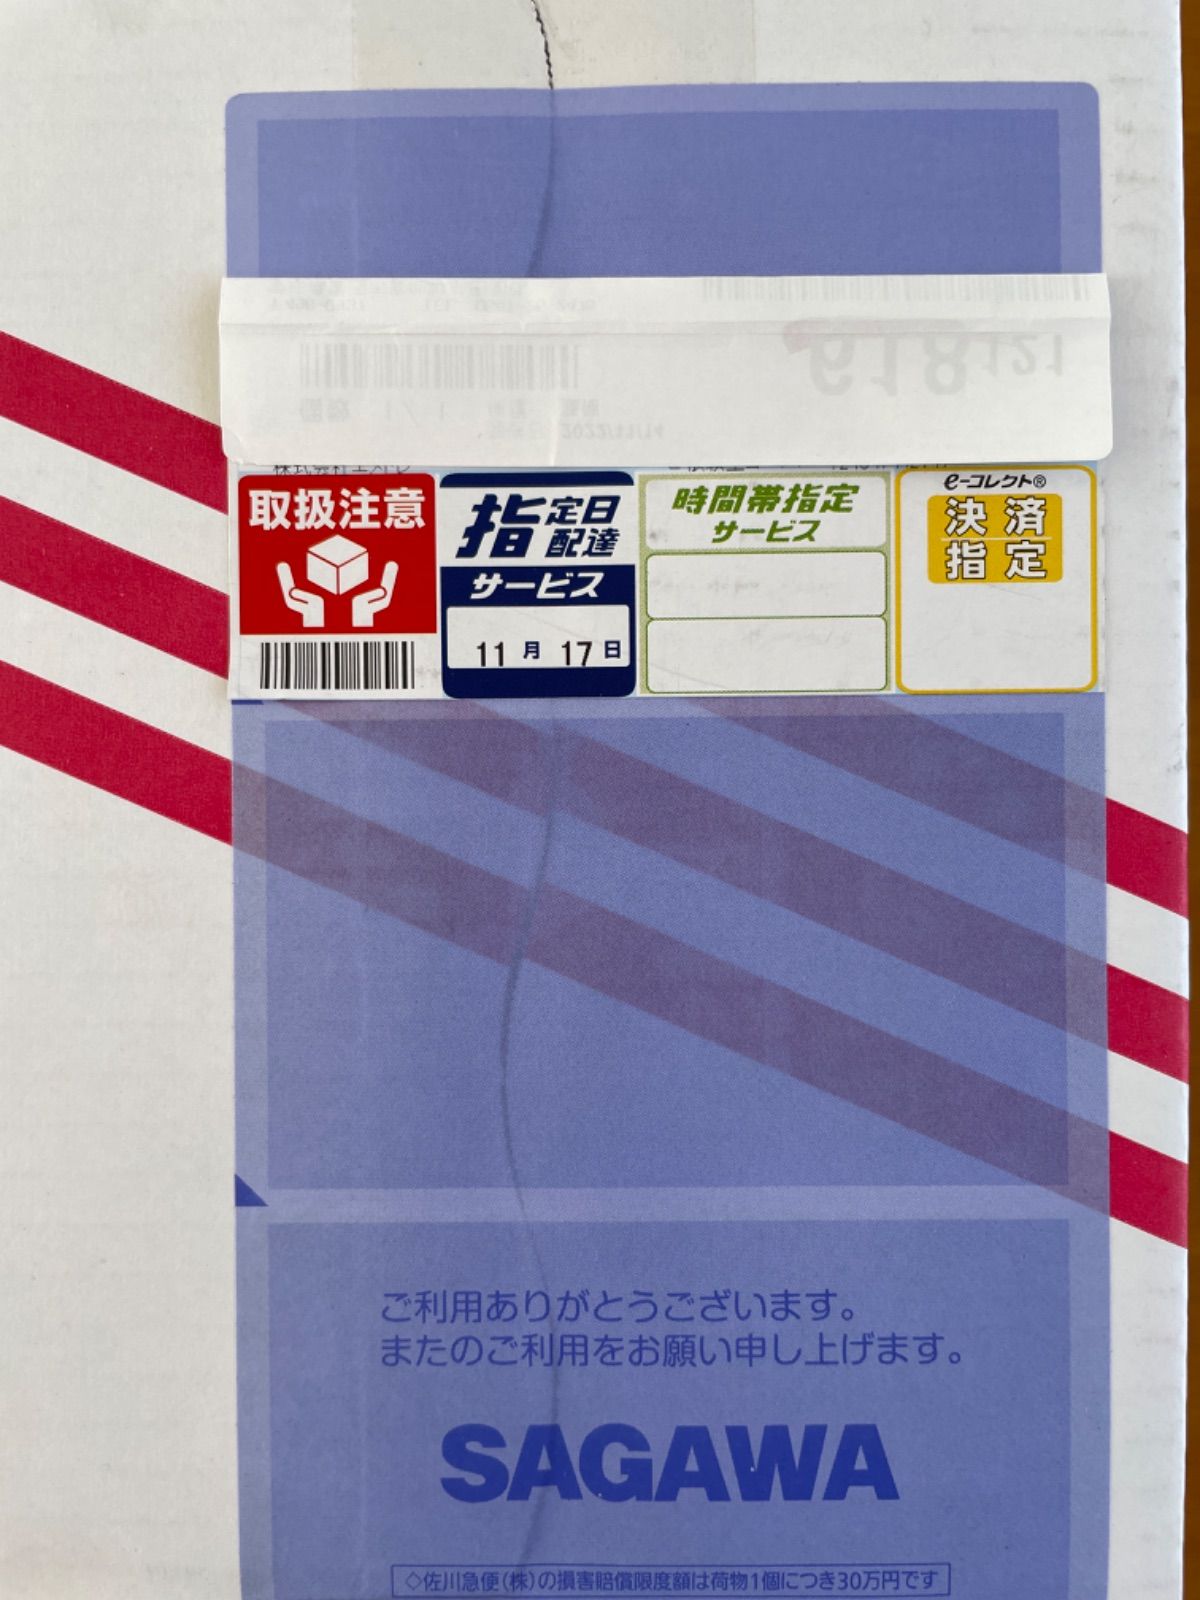 ☆日本の職人技☆ ドクターセノビル マスカット味 10袋